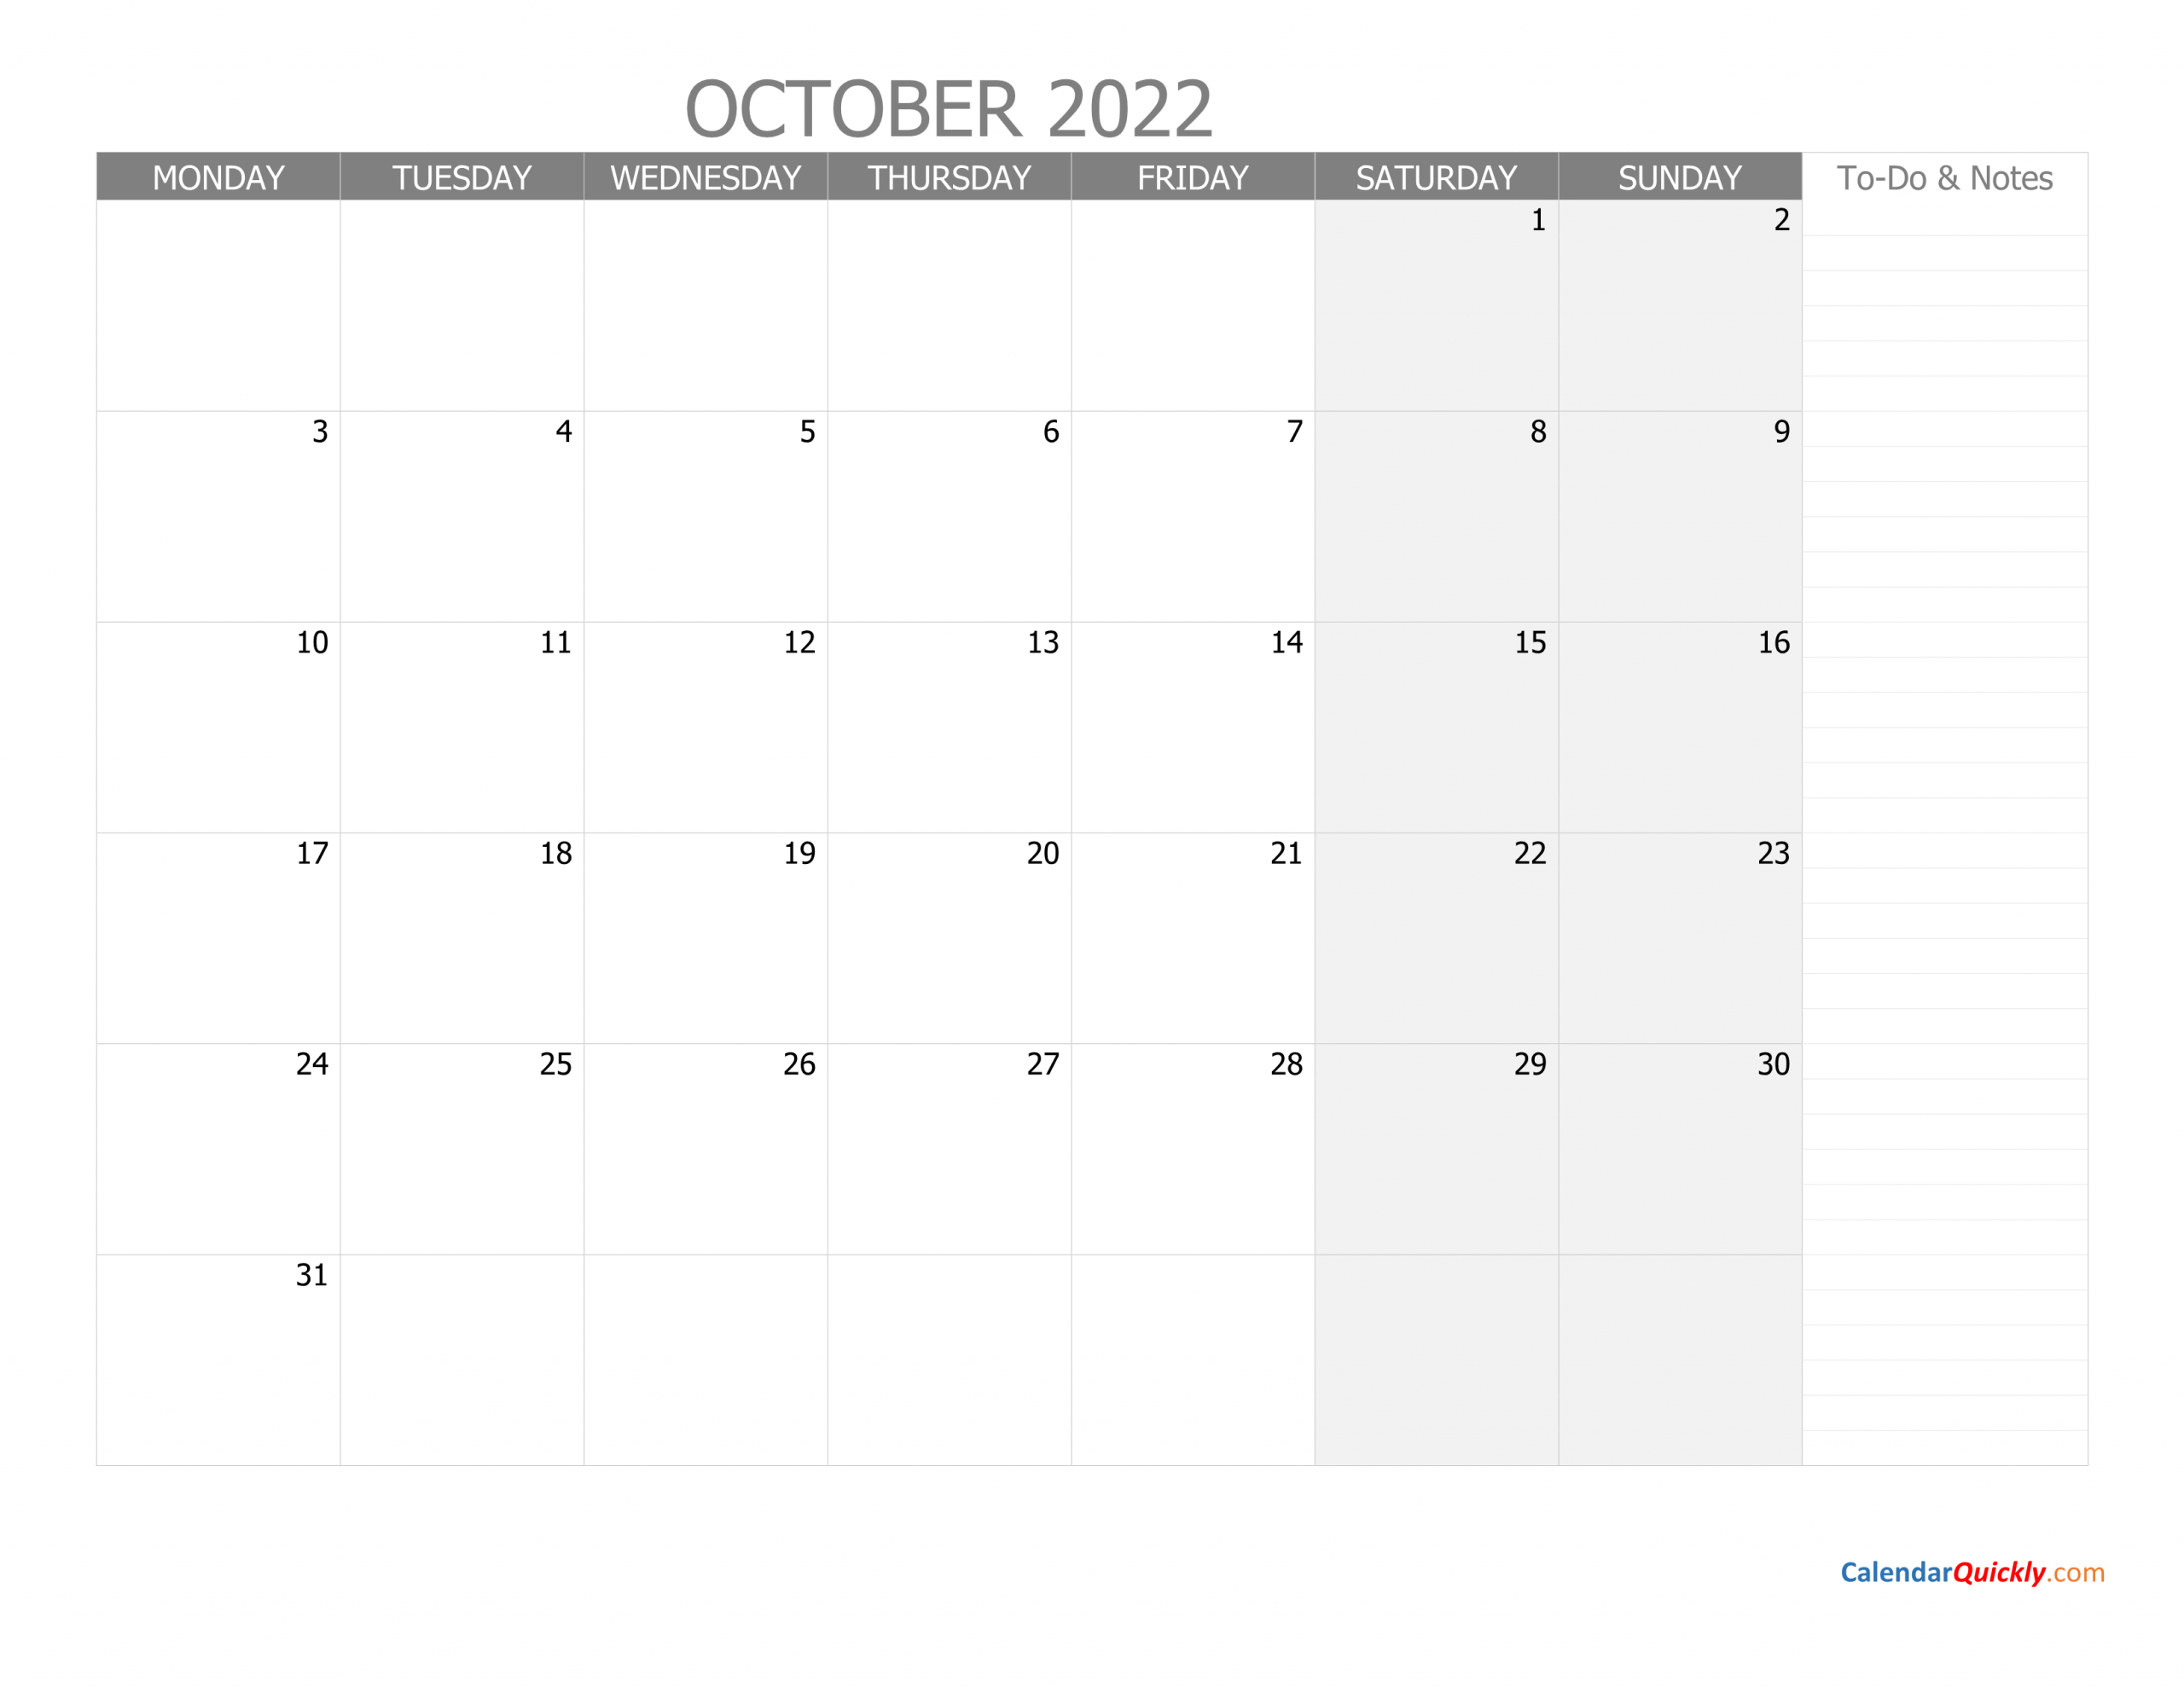 October Monday Calendar 2022 With Notes | Calendar Quickly